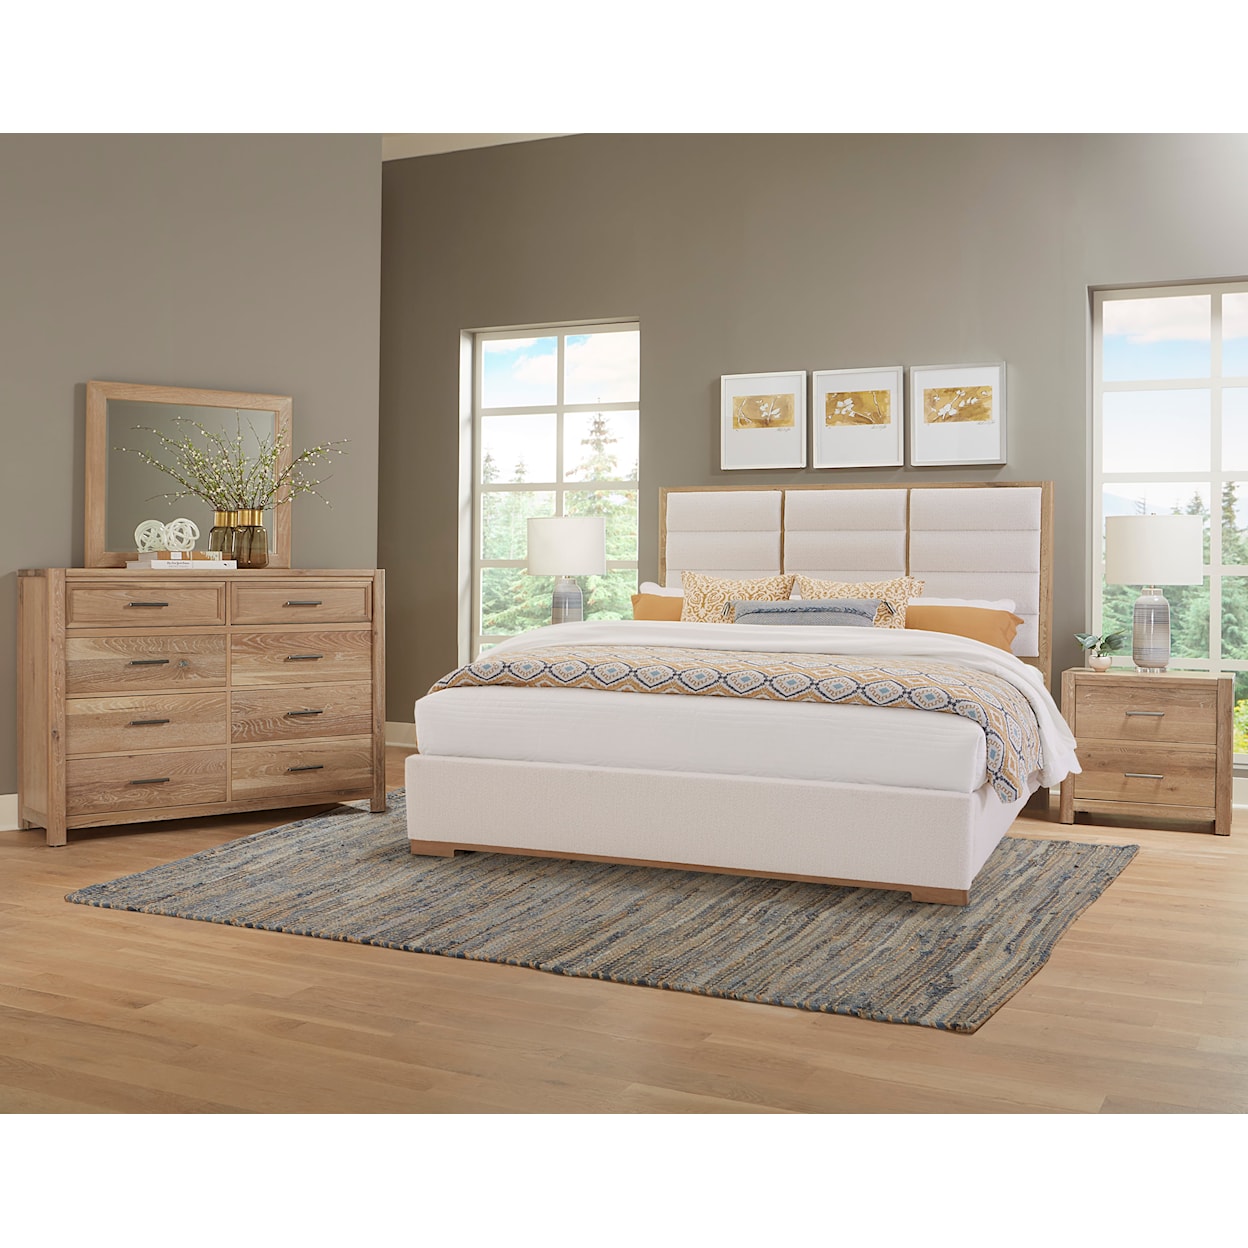 Vaughan-Bassett Charter Oak Upholstered King Panel Bed